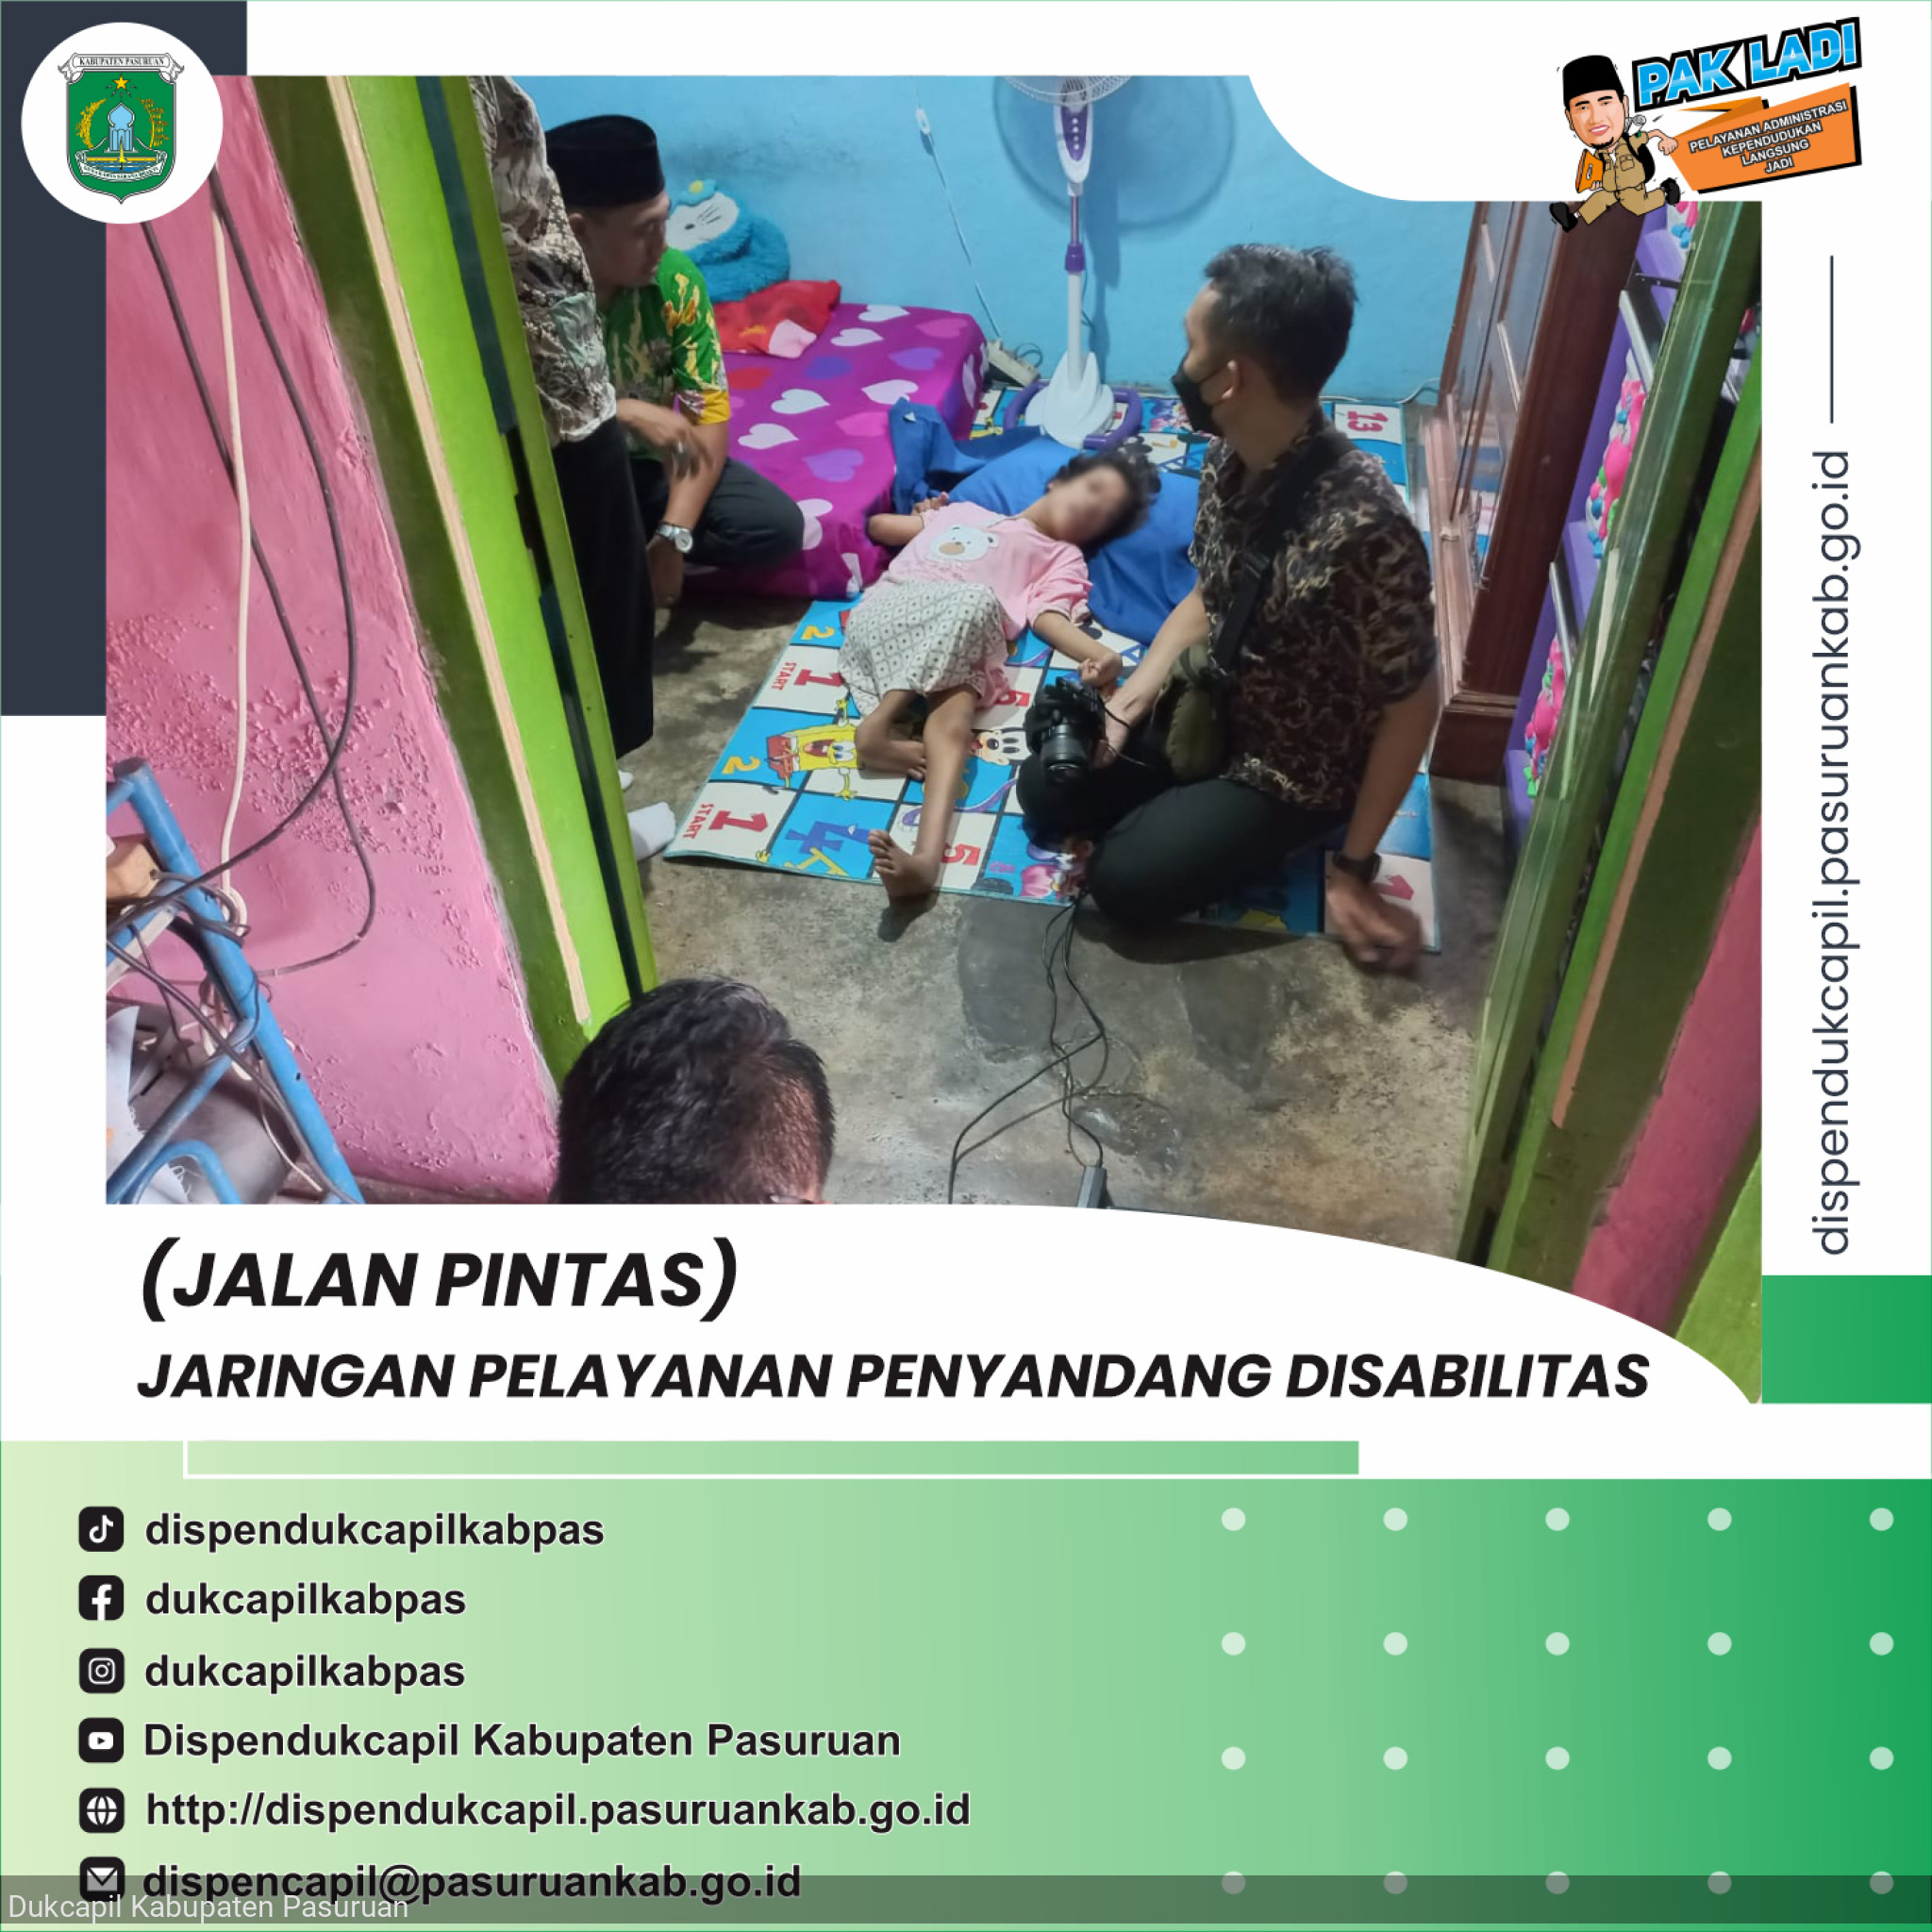 (JALAN PINTAS) Jaringan Pelayanan Penyandang Disabilitas di Kelurahan Kauman Kecamatan Bangil Kabupaten Pasuruan